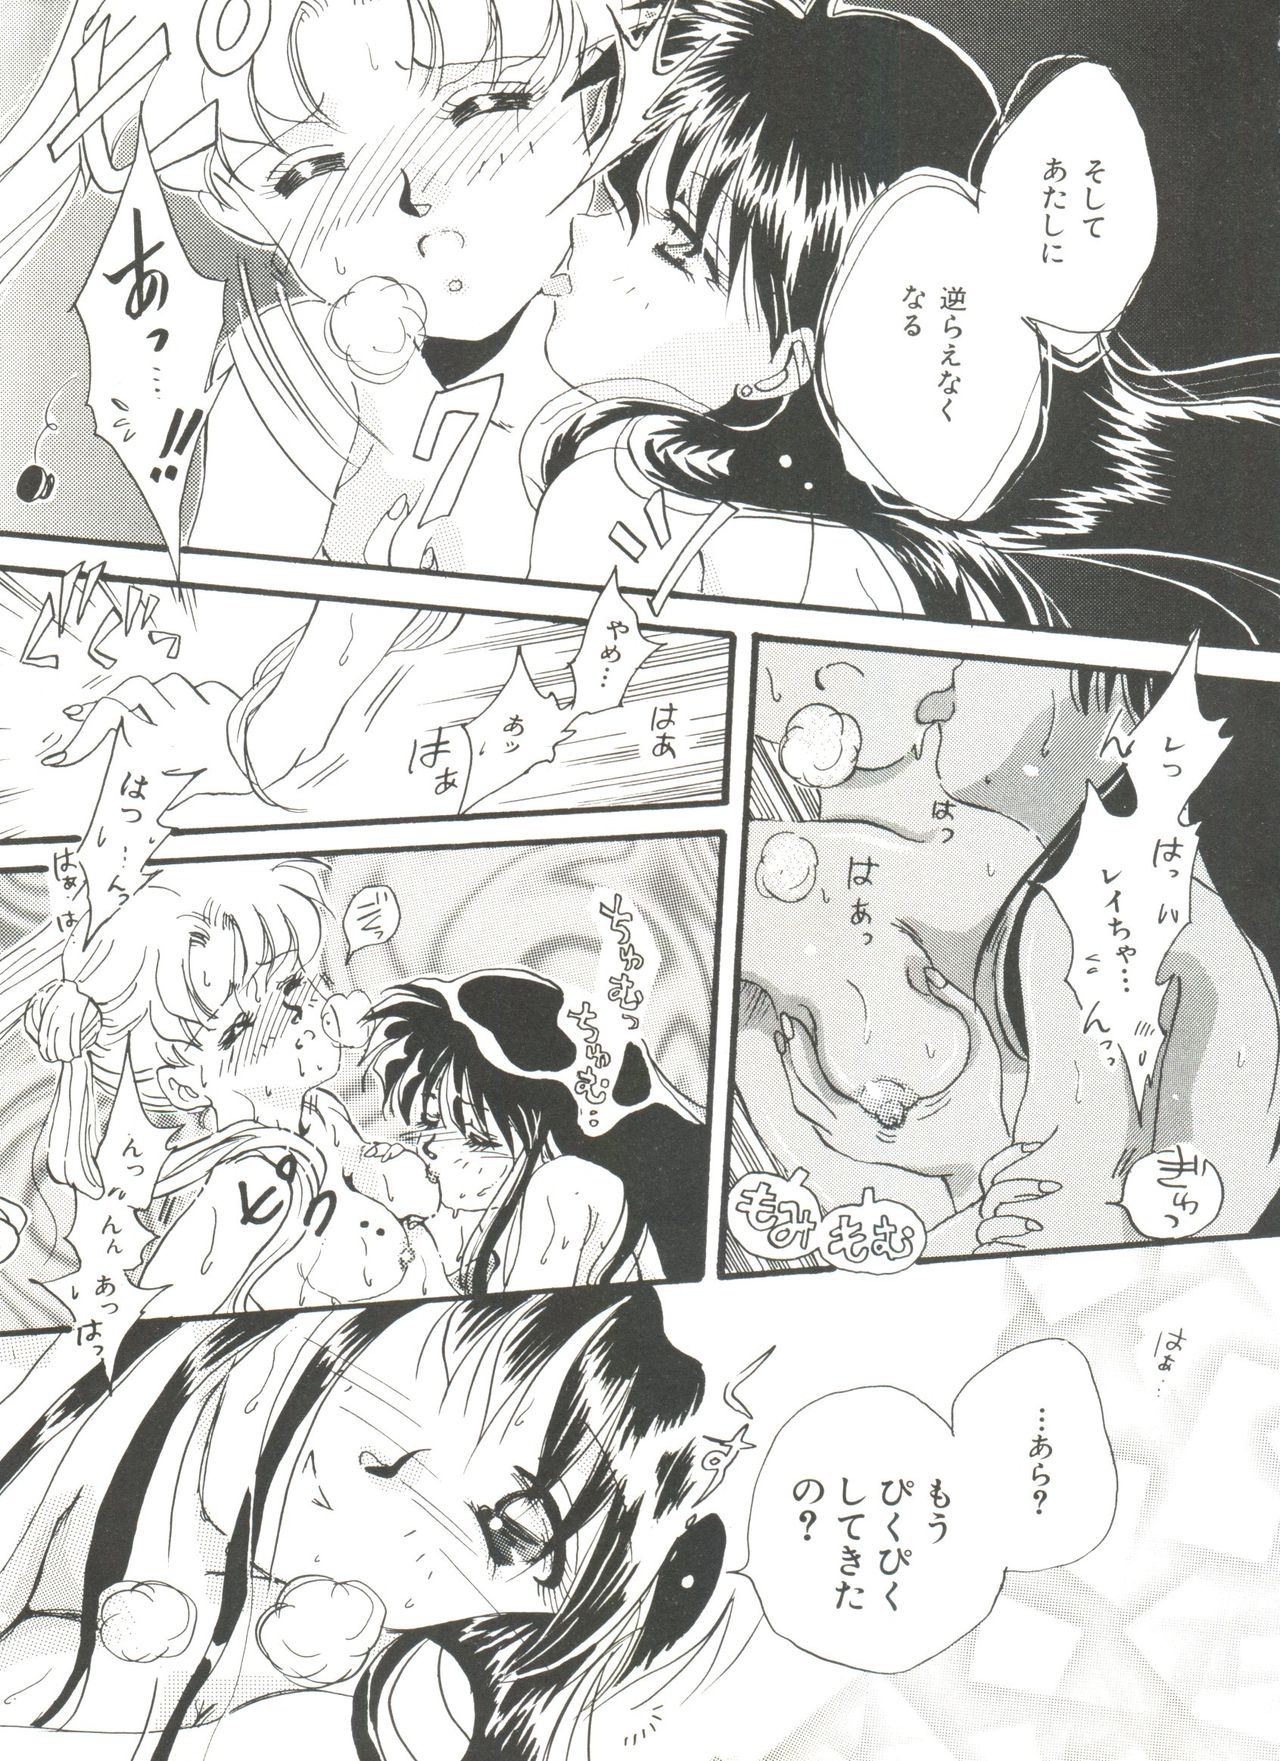 [Anthology] Bishoujo Doujinshi Anthology 18 - Moon Paradise 11 Tsuki no Rakuen (Bishoujo Senshi Sailor Moon) page 13 full